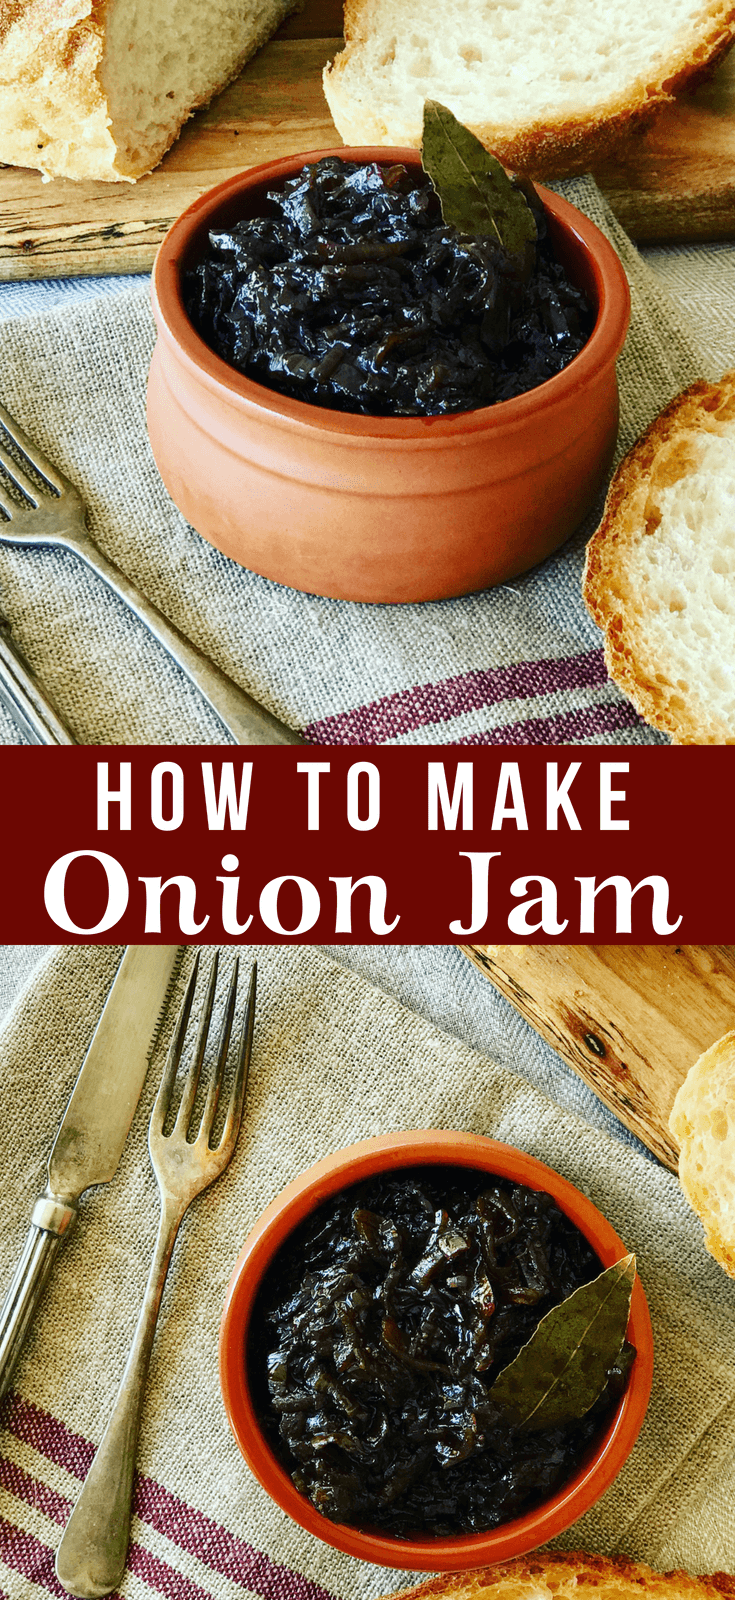 onion jam in a bowl beside bread